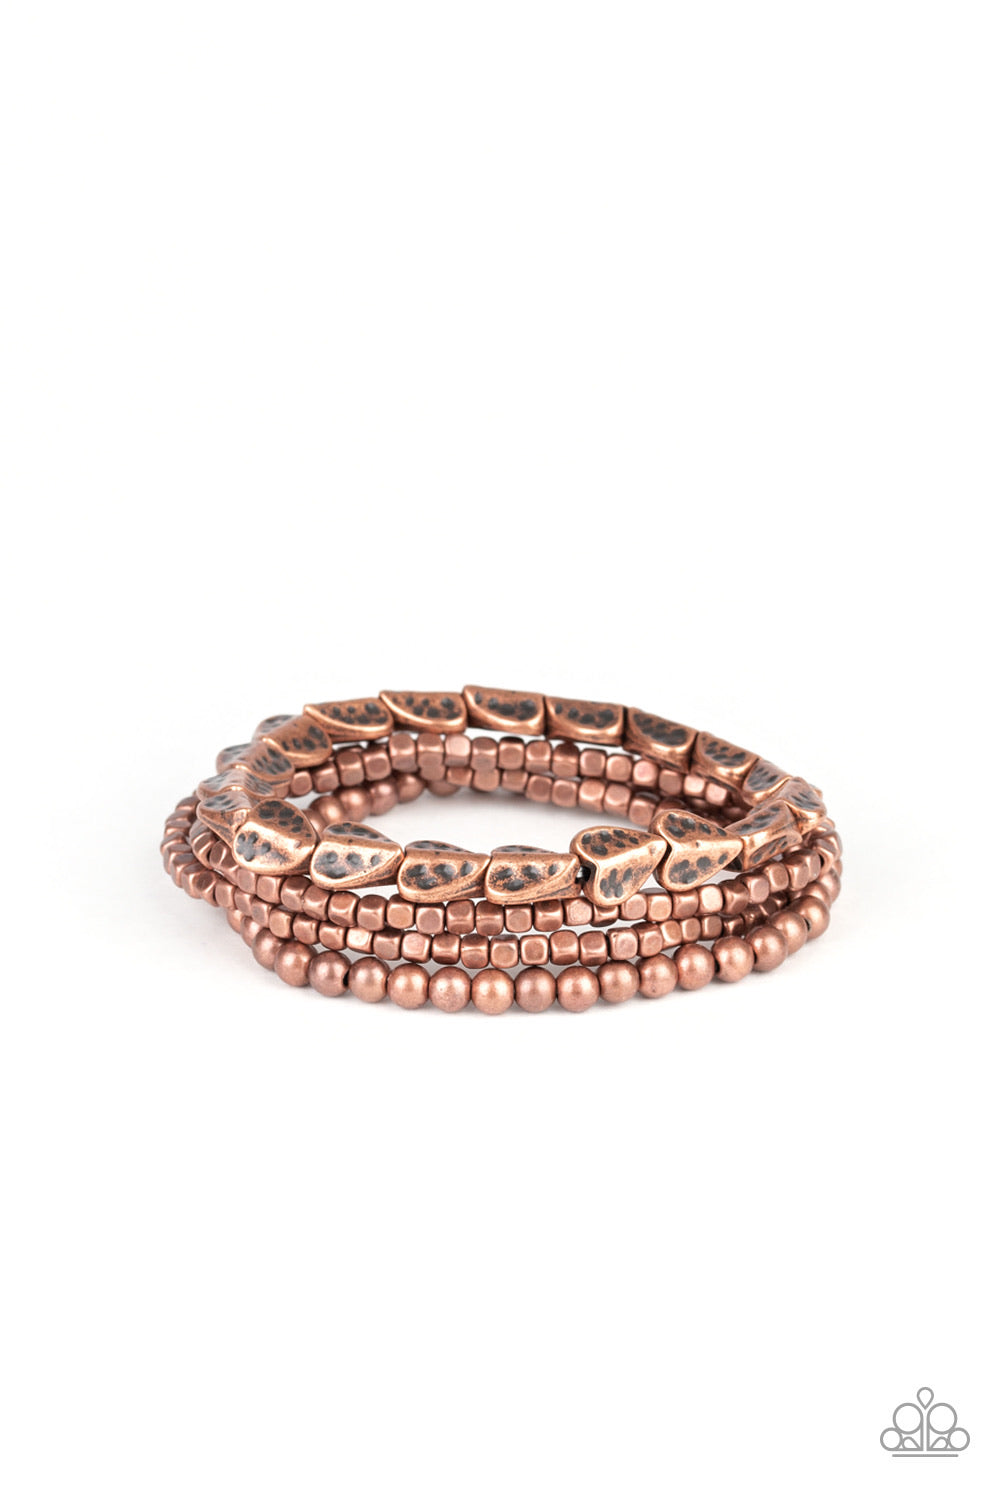 Paparazzi Bracelets Ancient Heirloom - Copper